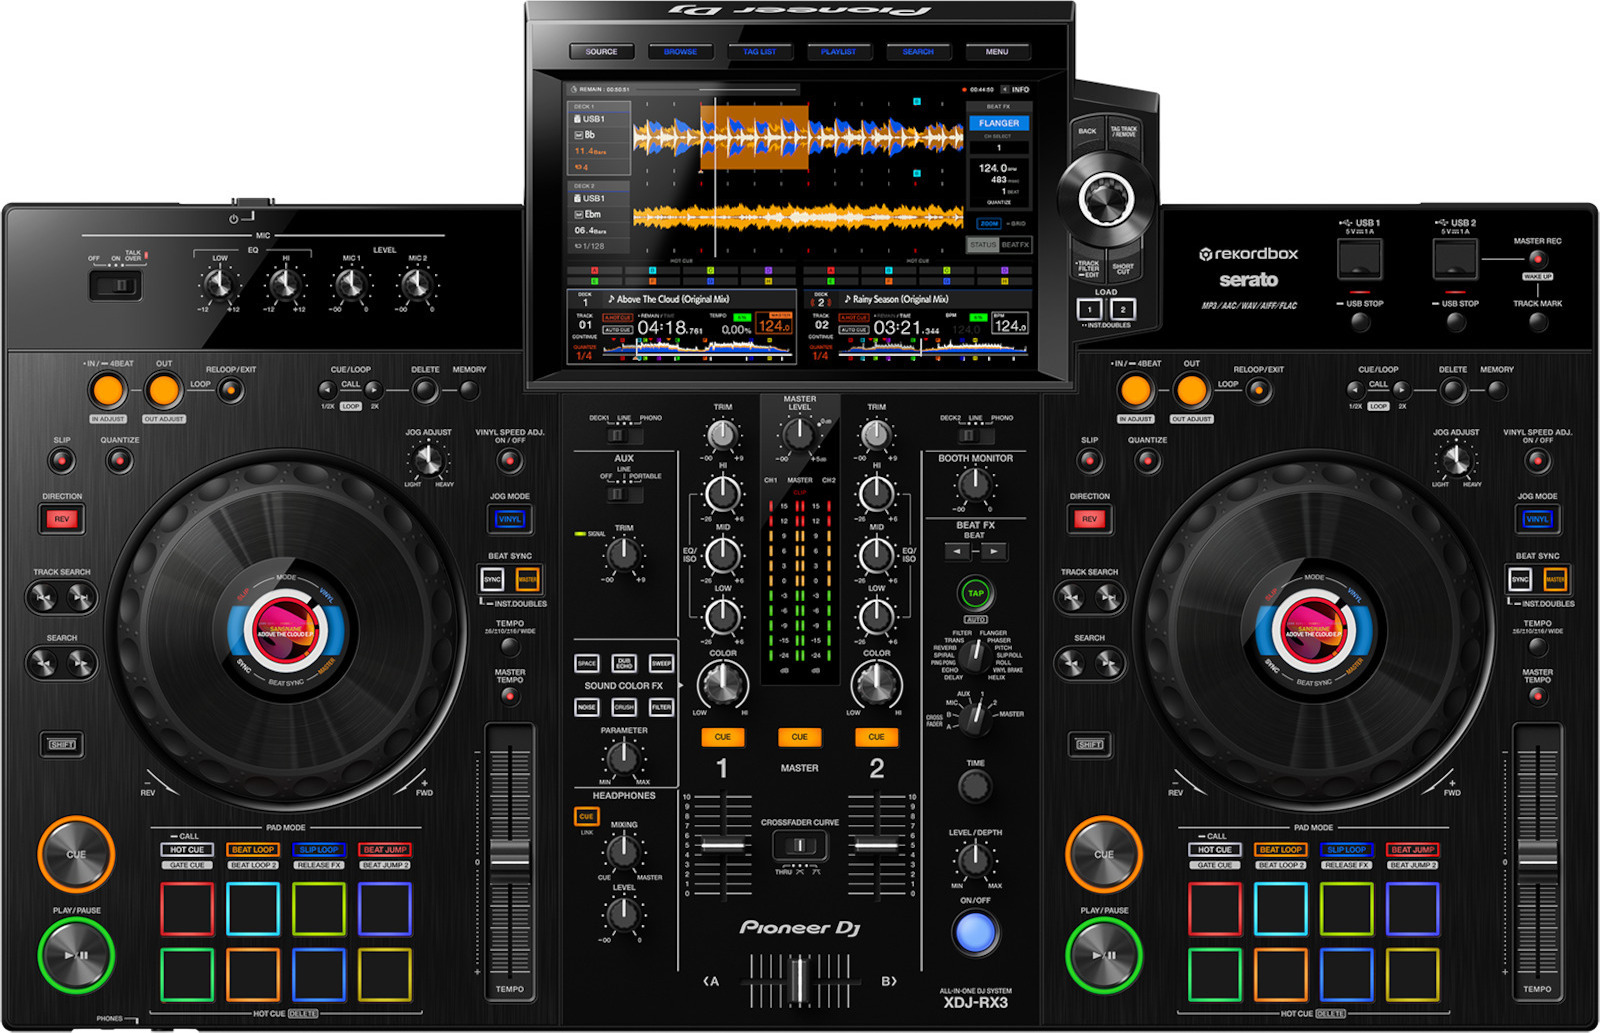 Pioneer DJ Controller XDJ-RX3 en color negro